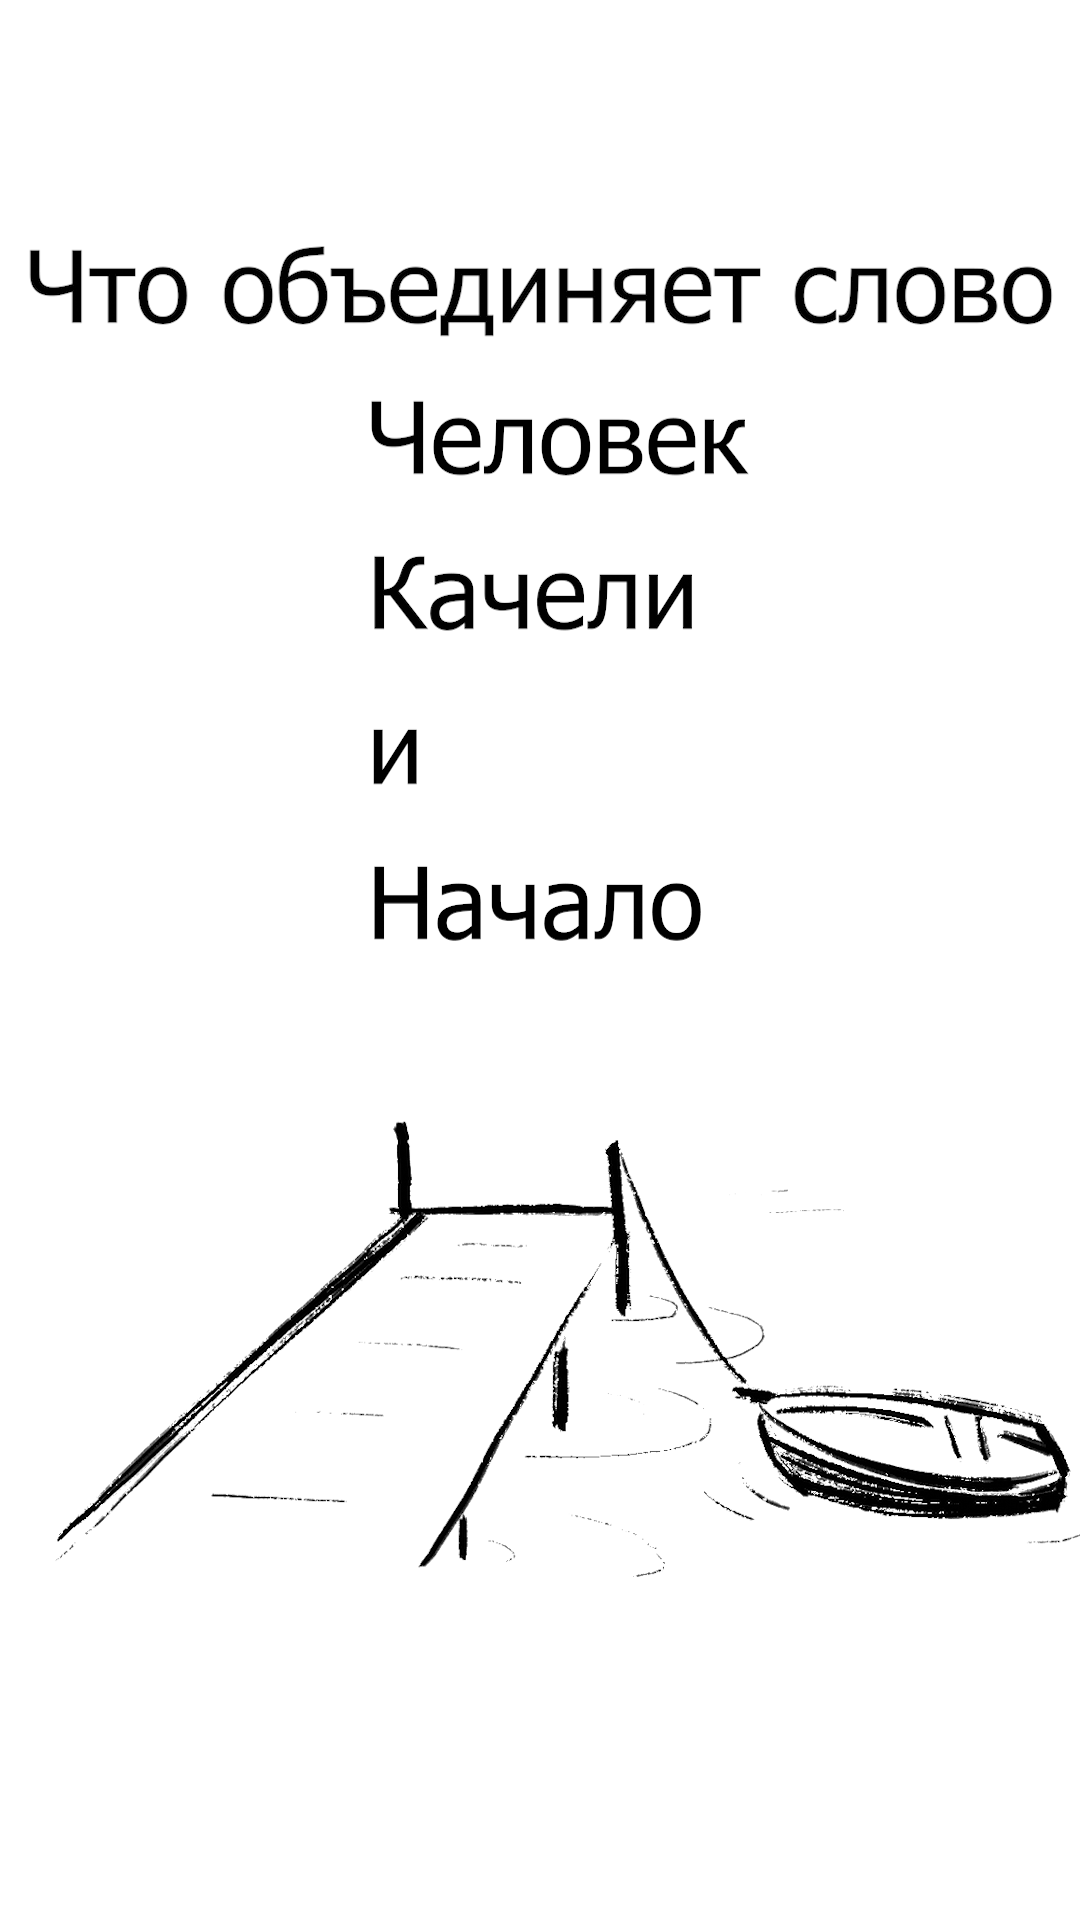 #Рунарь. Человек, Качели, Начало. Русский язык это Интересно! Часть 8. #РусскийЯзык #Интересно